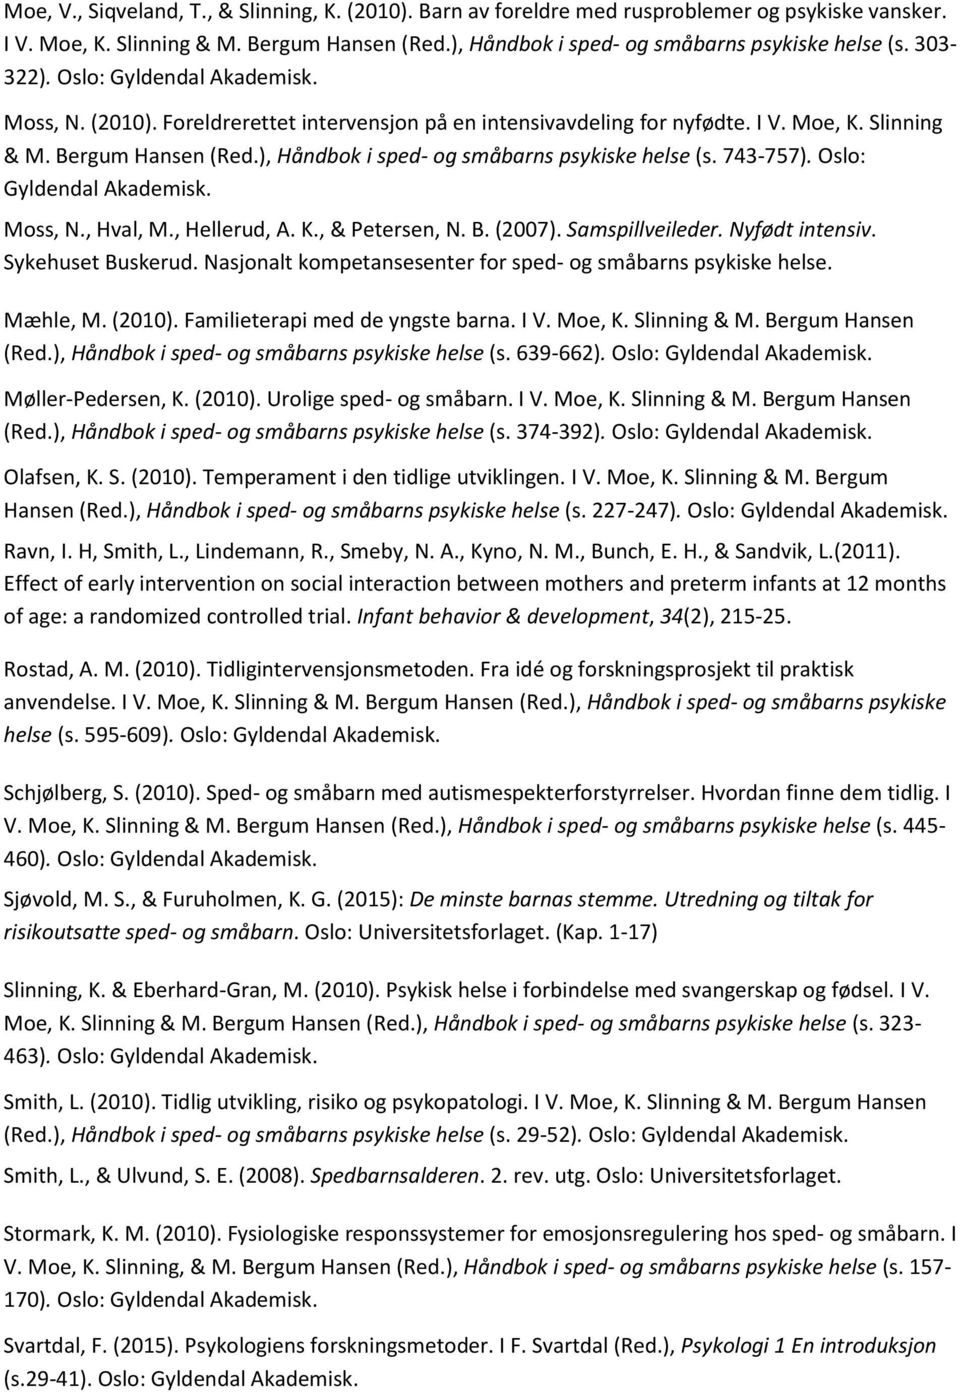 743-757). Oslo: Moss, N., Hval, M., Hellerud, A. K., & Petersen, N. B. (2007). Samspillveileder. Nyfødt intensiv. Sykehuset Buskerud. Nasjonalt kompetansesenter for sped- og småbarns psykiske helse.